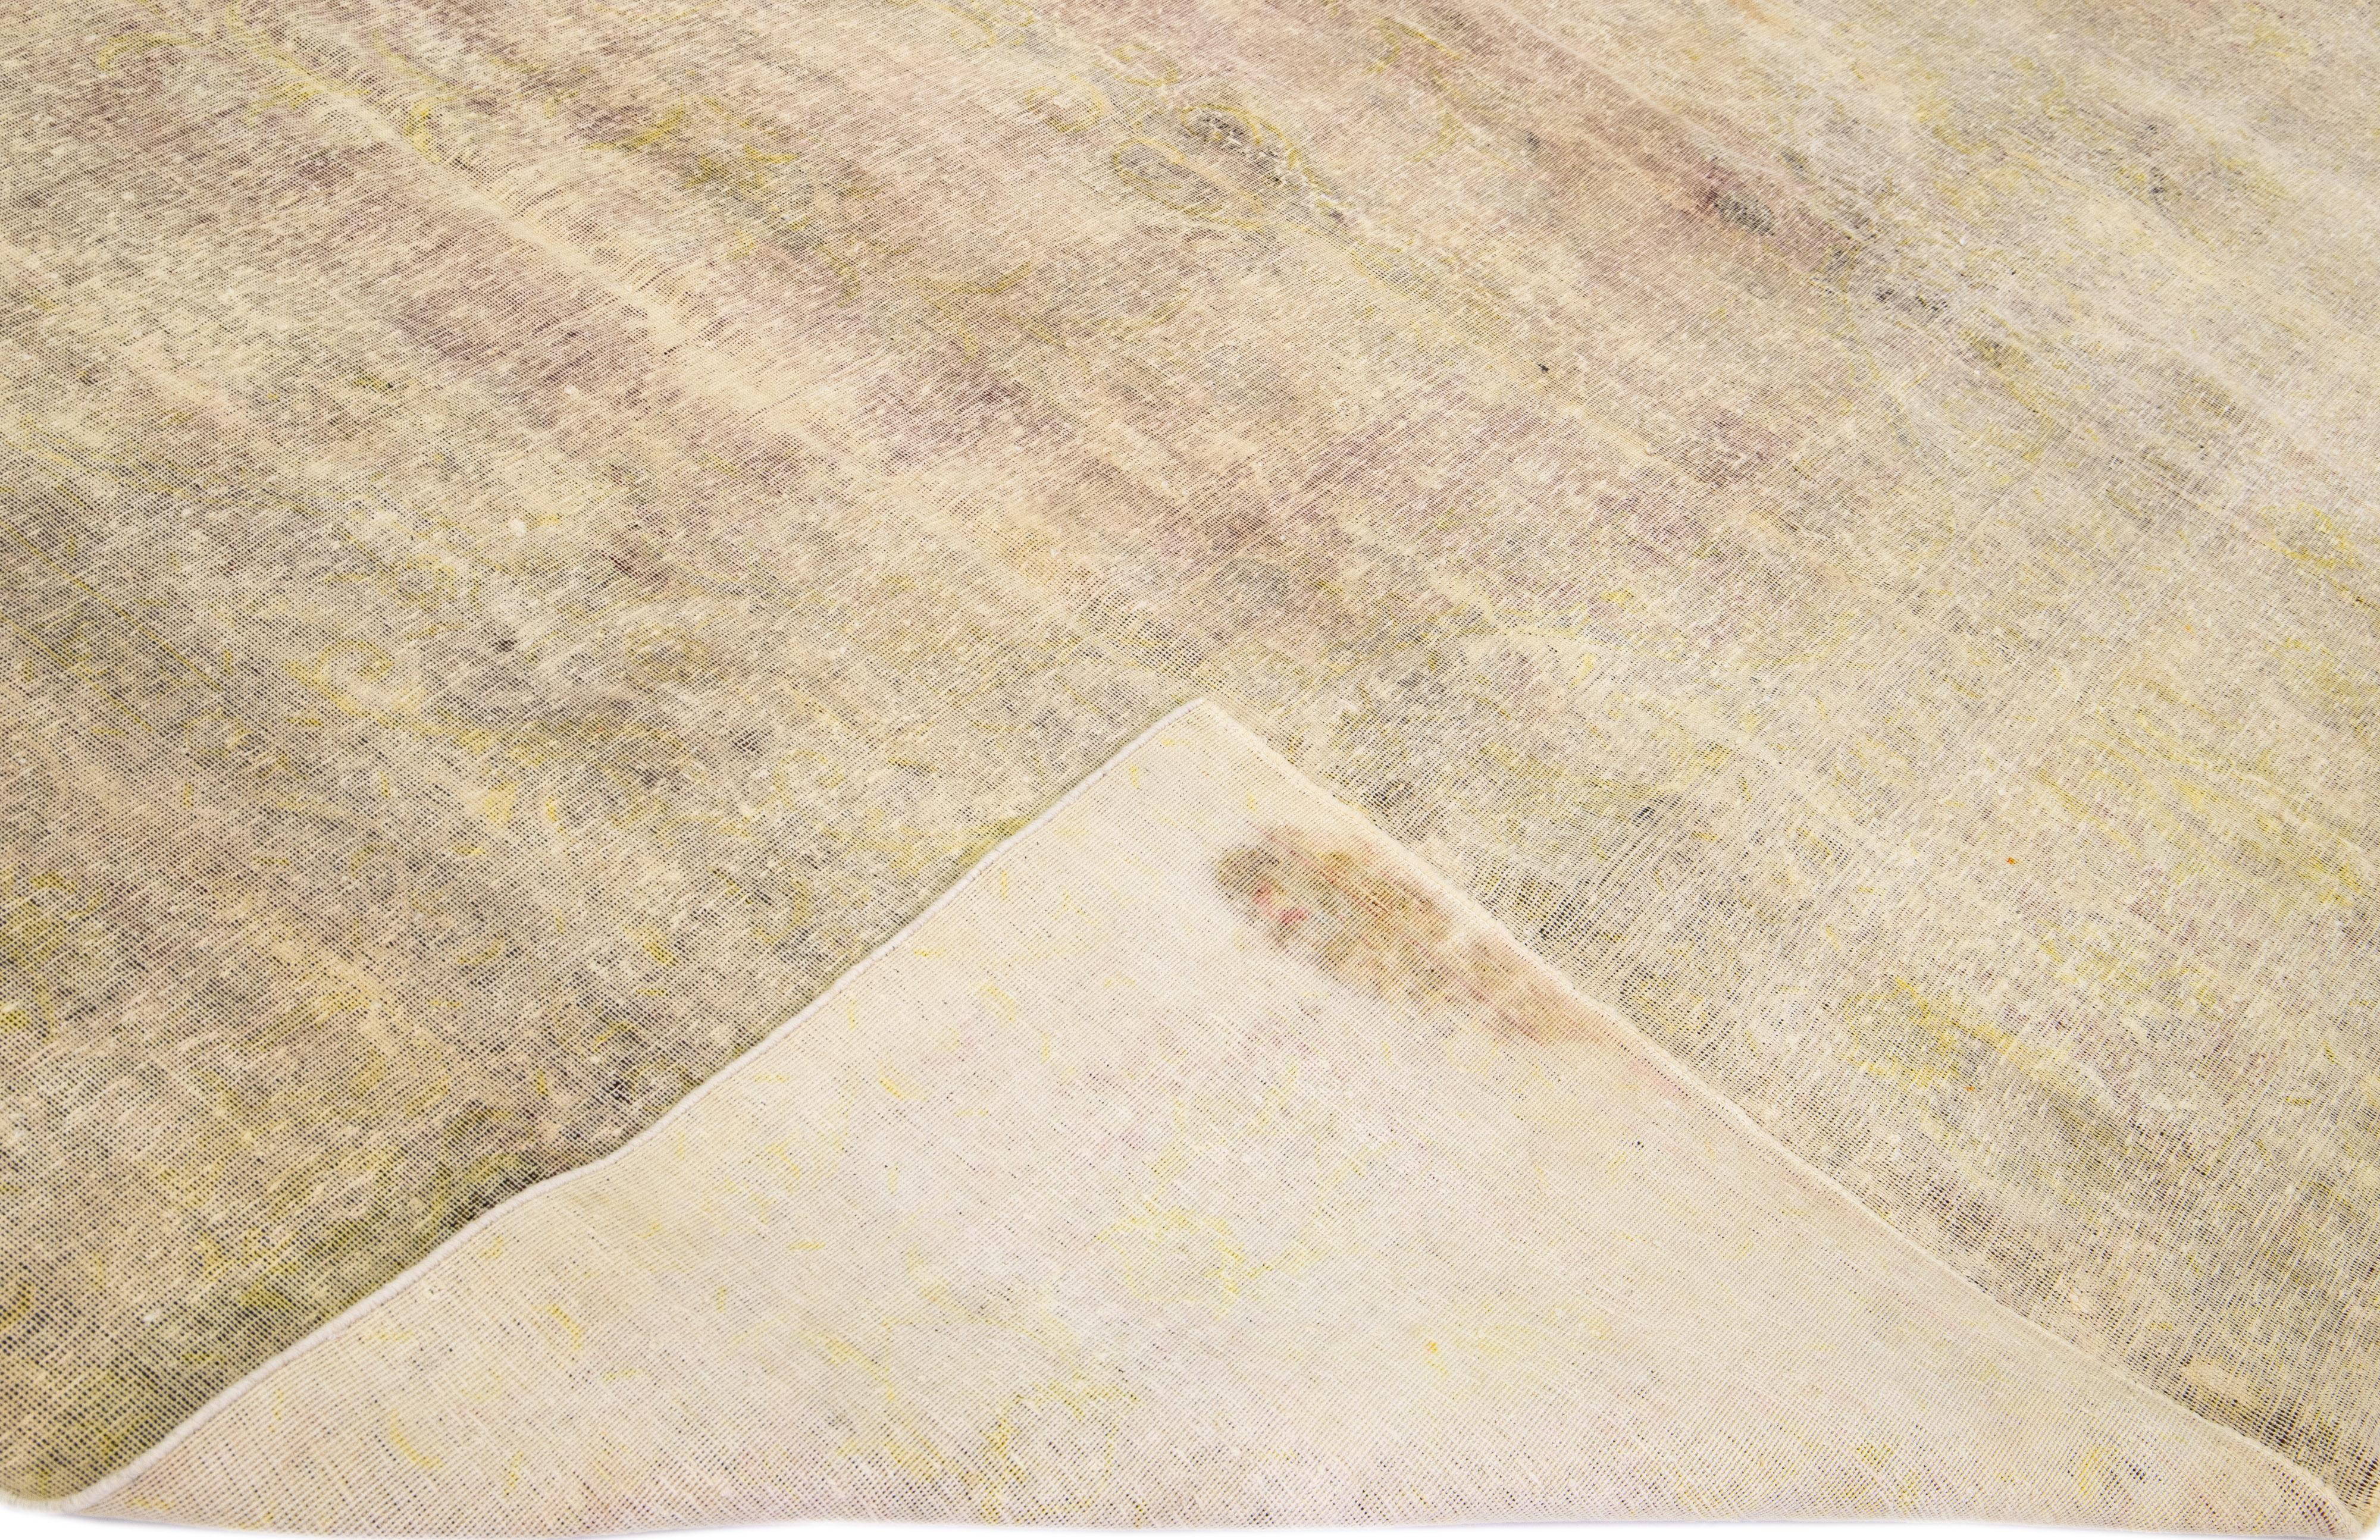 Schöner handgeknüpfter Vintage-Teppich aus persischer Wolle mit beigem Feld. Dieser strapazierte Teppich hat rosa und gelbe Akzente und zeigt ein traditionelles Blumenmuster. 

Dieser Teppich misst 10'6